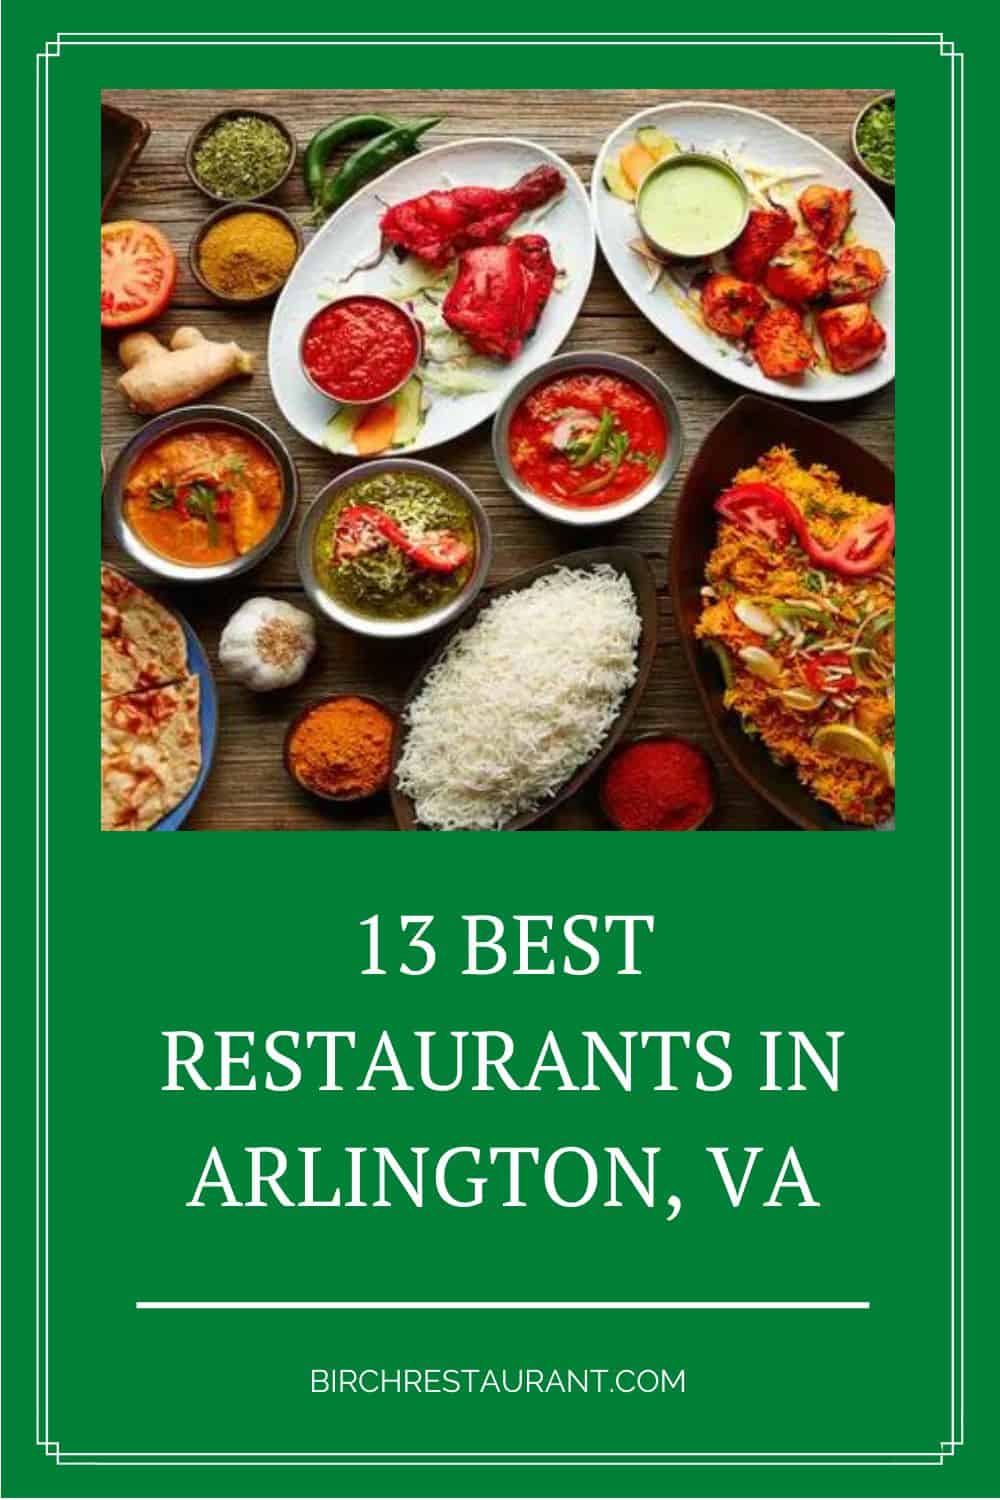 Best Restaurants in Arlington